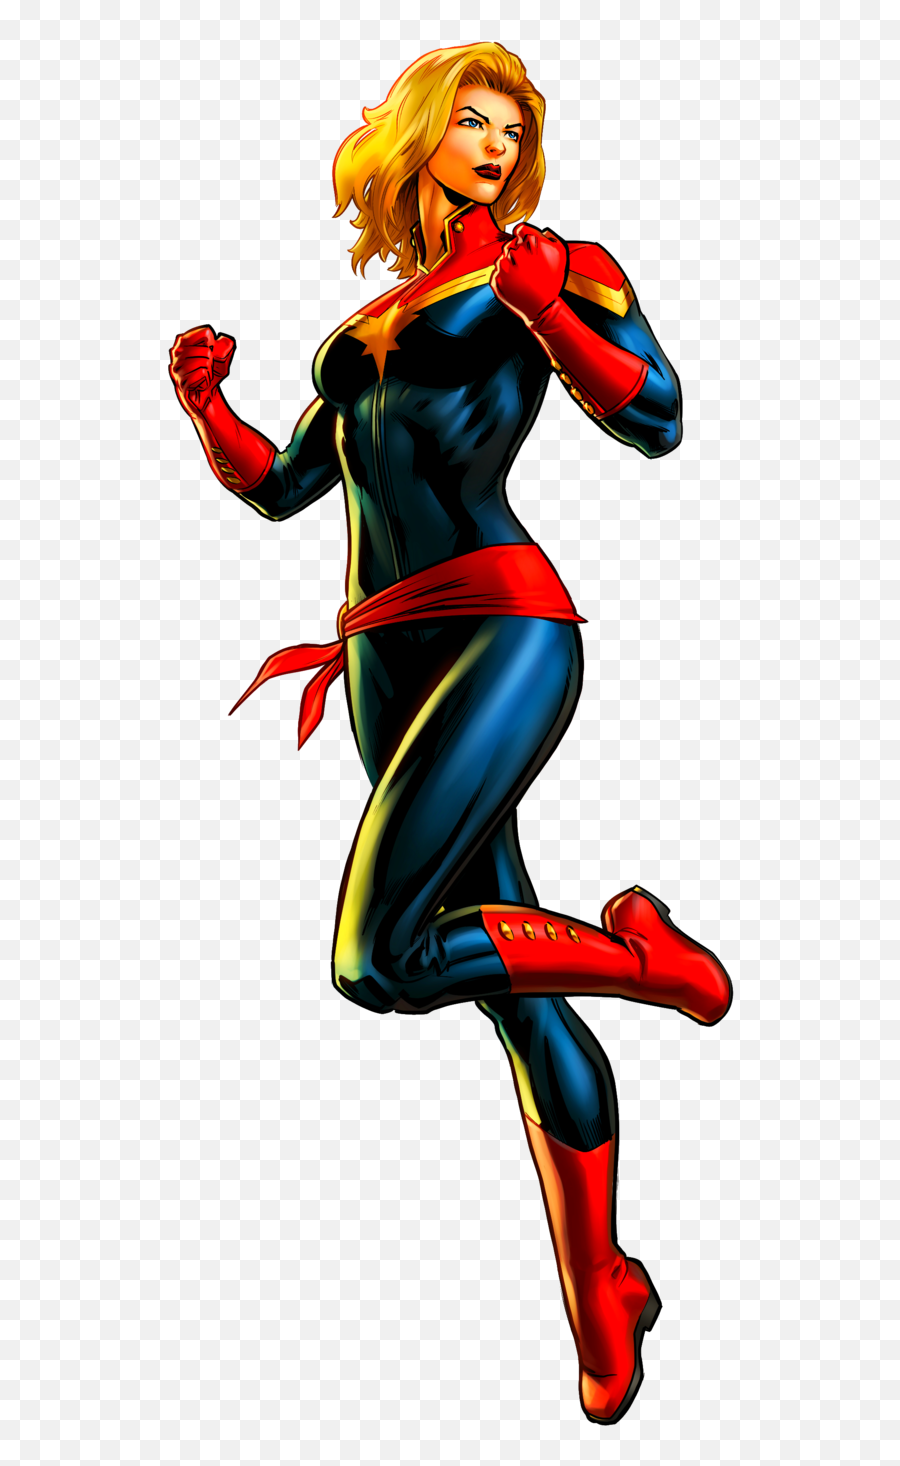 Ms Marvel Png Transparent - Avengers Captain Marvel Cartoon,Marvel Png -  free transparent png images 